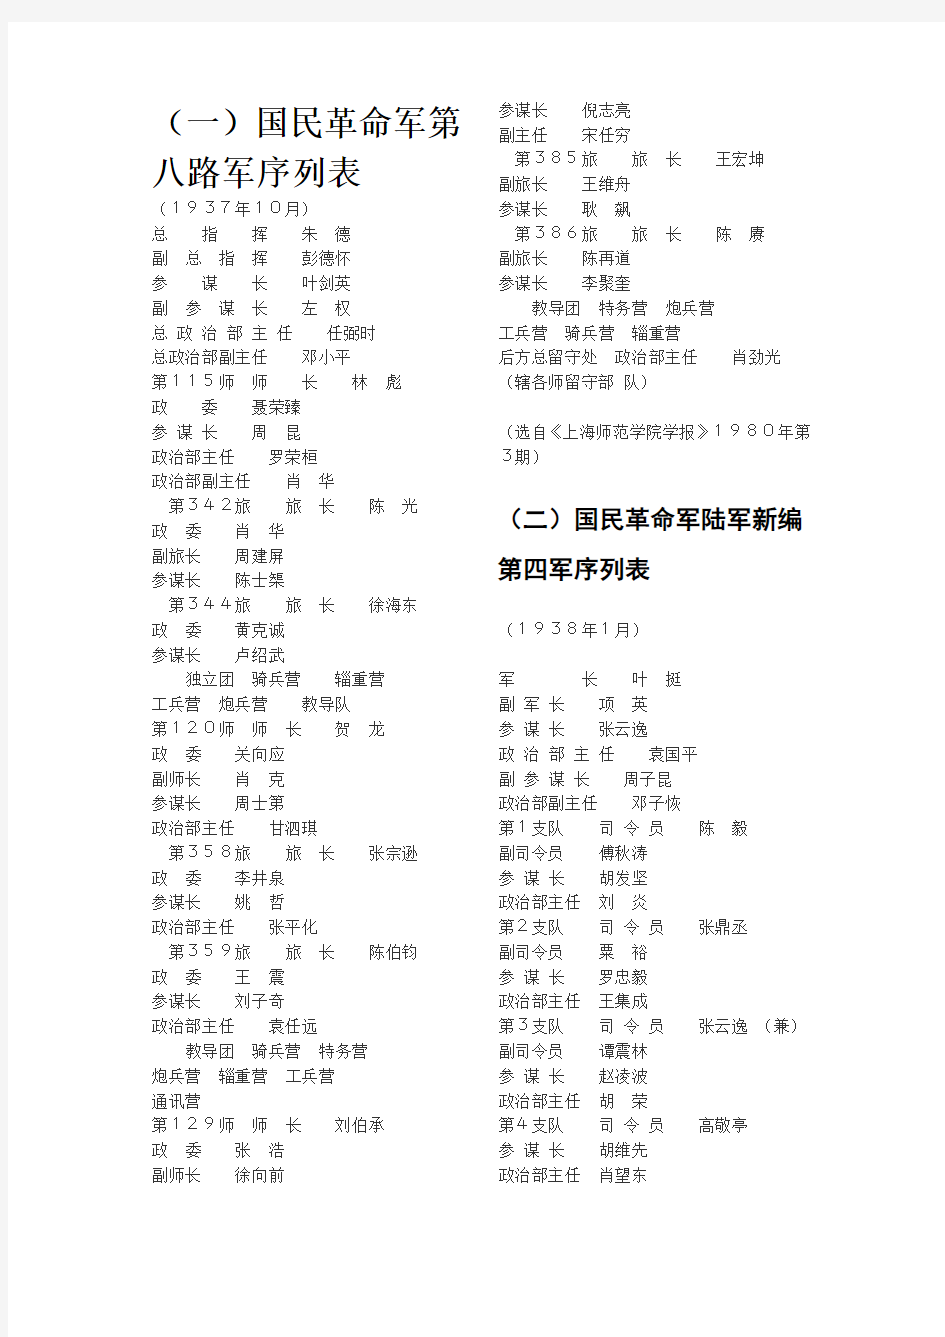 国民革命军第八路军序列表